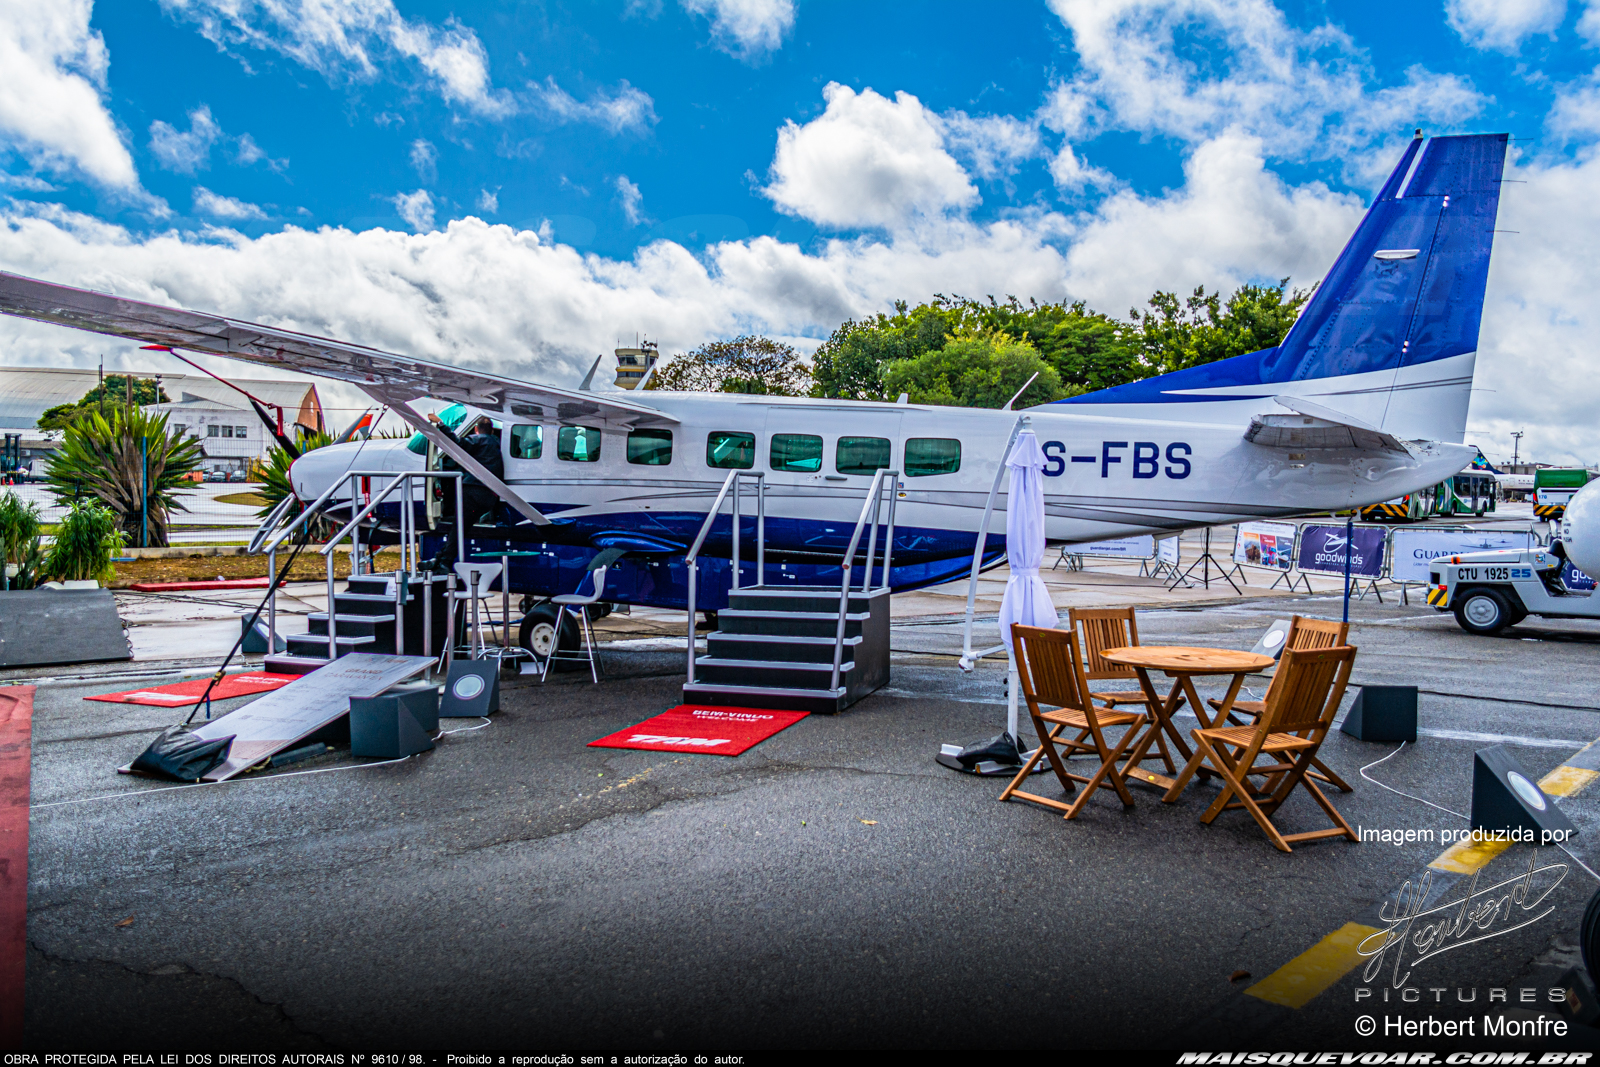 Primeiro Cessna Caravan da Amaro Aviation chegará em maio | MAIS QUE VOAR | Aviação - Notícias - Fotos | Foto © Herbert Monfre